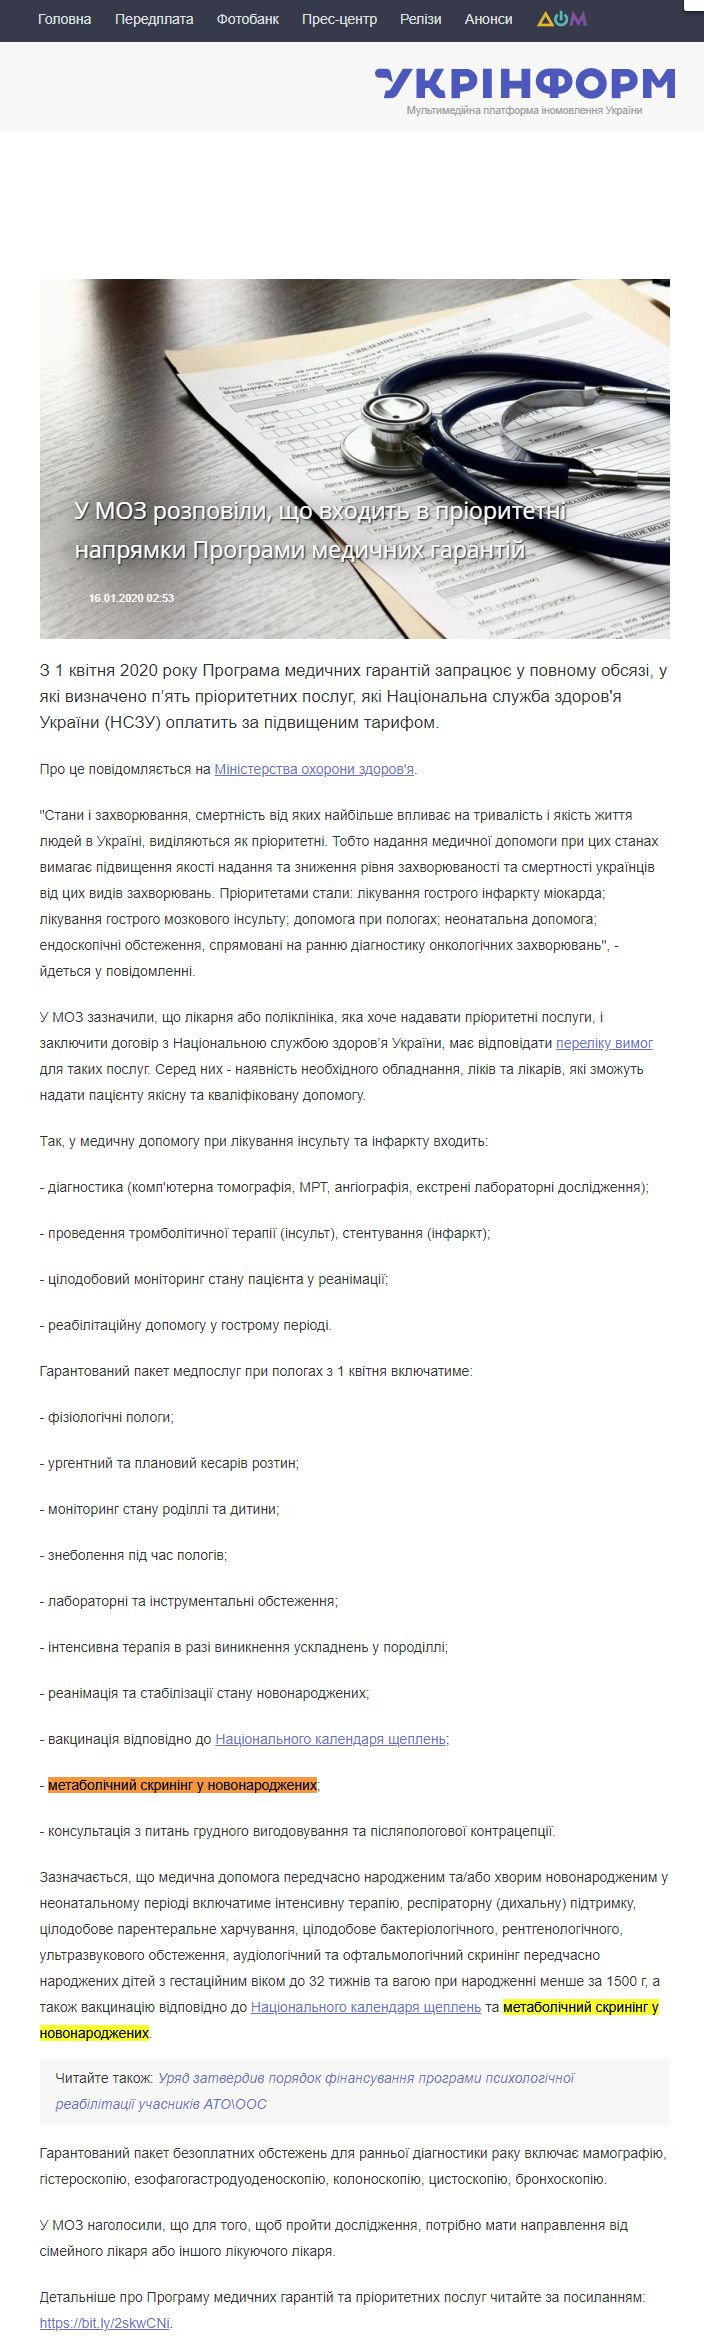 https://www.ukrinform.ua/rubric-society/2856712-u-moz-rozpovili-so-vhodit-v-prioritetni-napramki-programi-medicnih-garantij.html